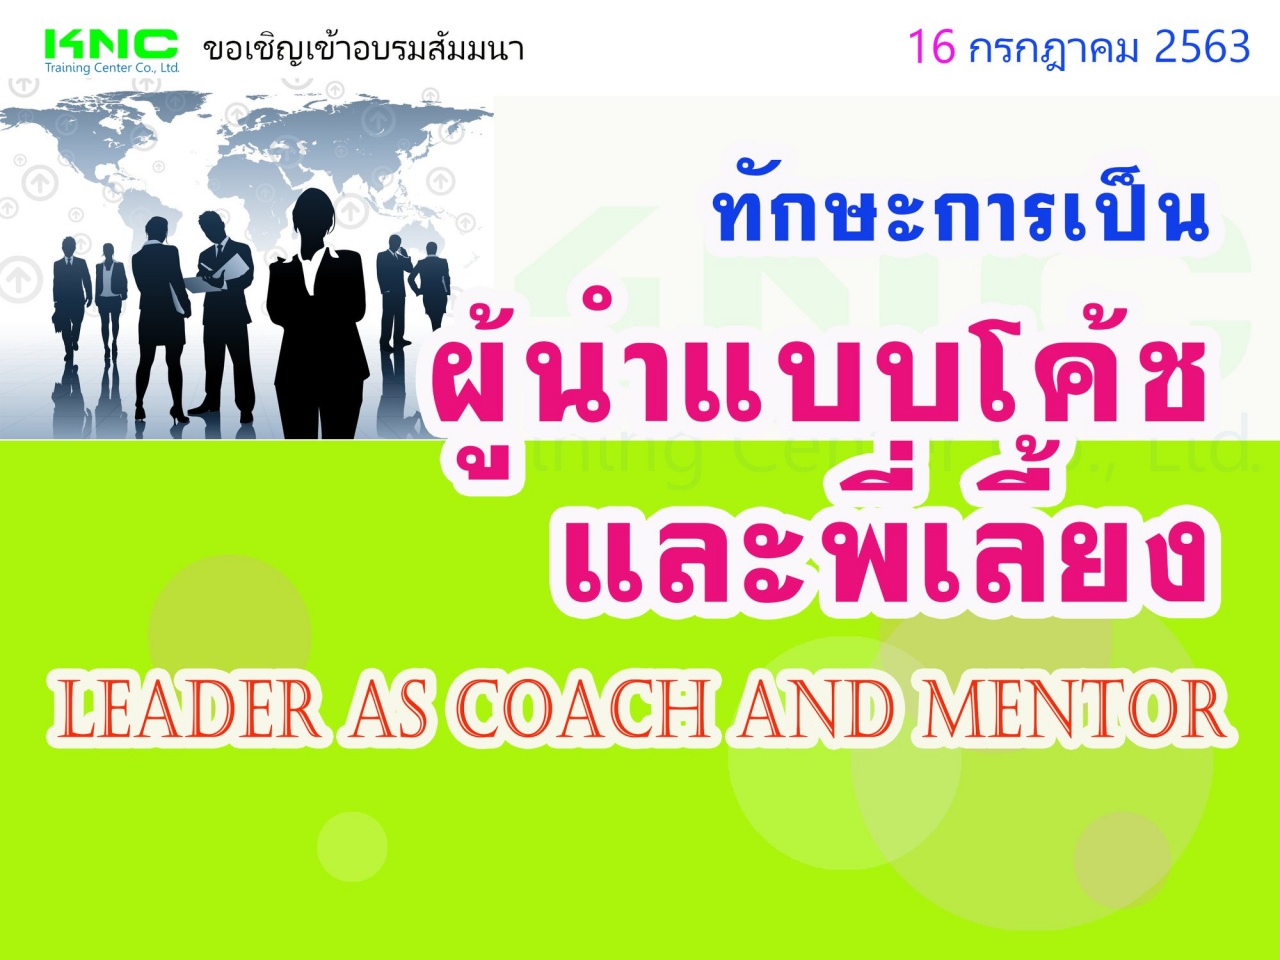 ทักษะการเป็นผู้นำแบบโค้ชและพี่เลี้ยง (Leader as Coach and Mentor)